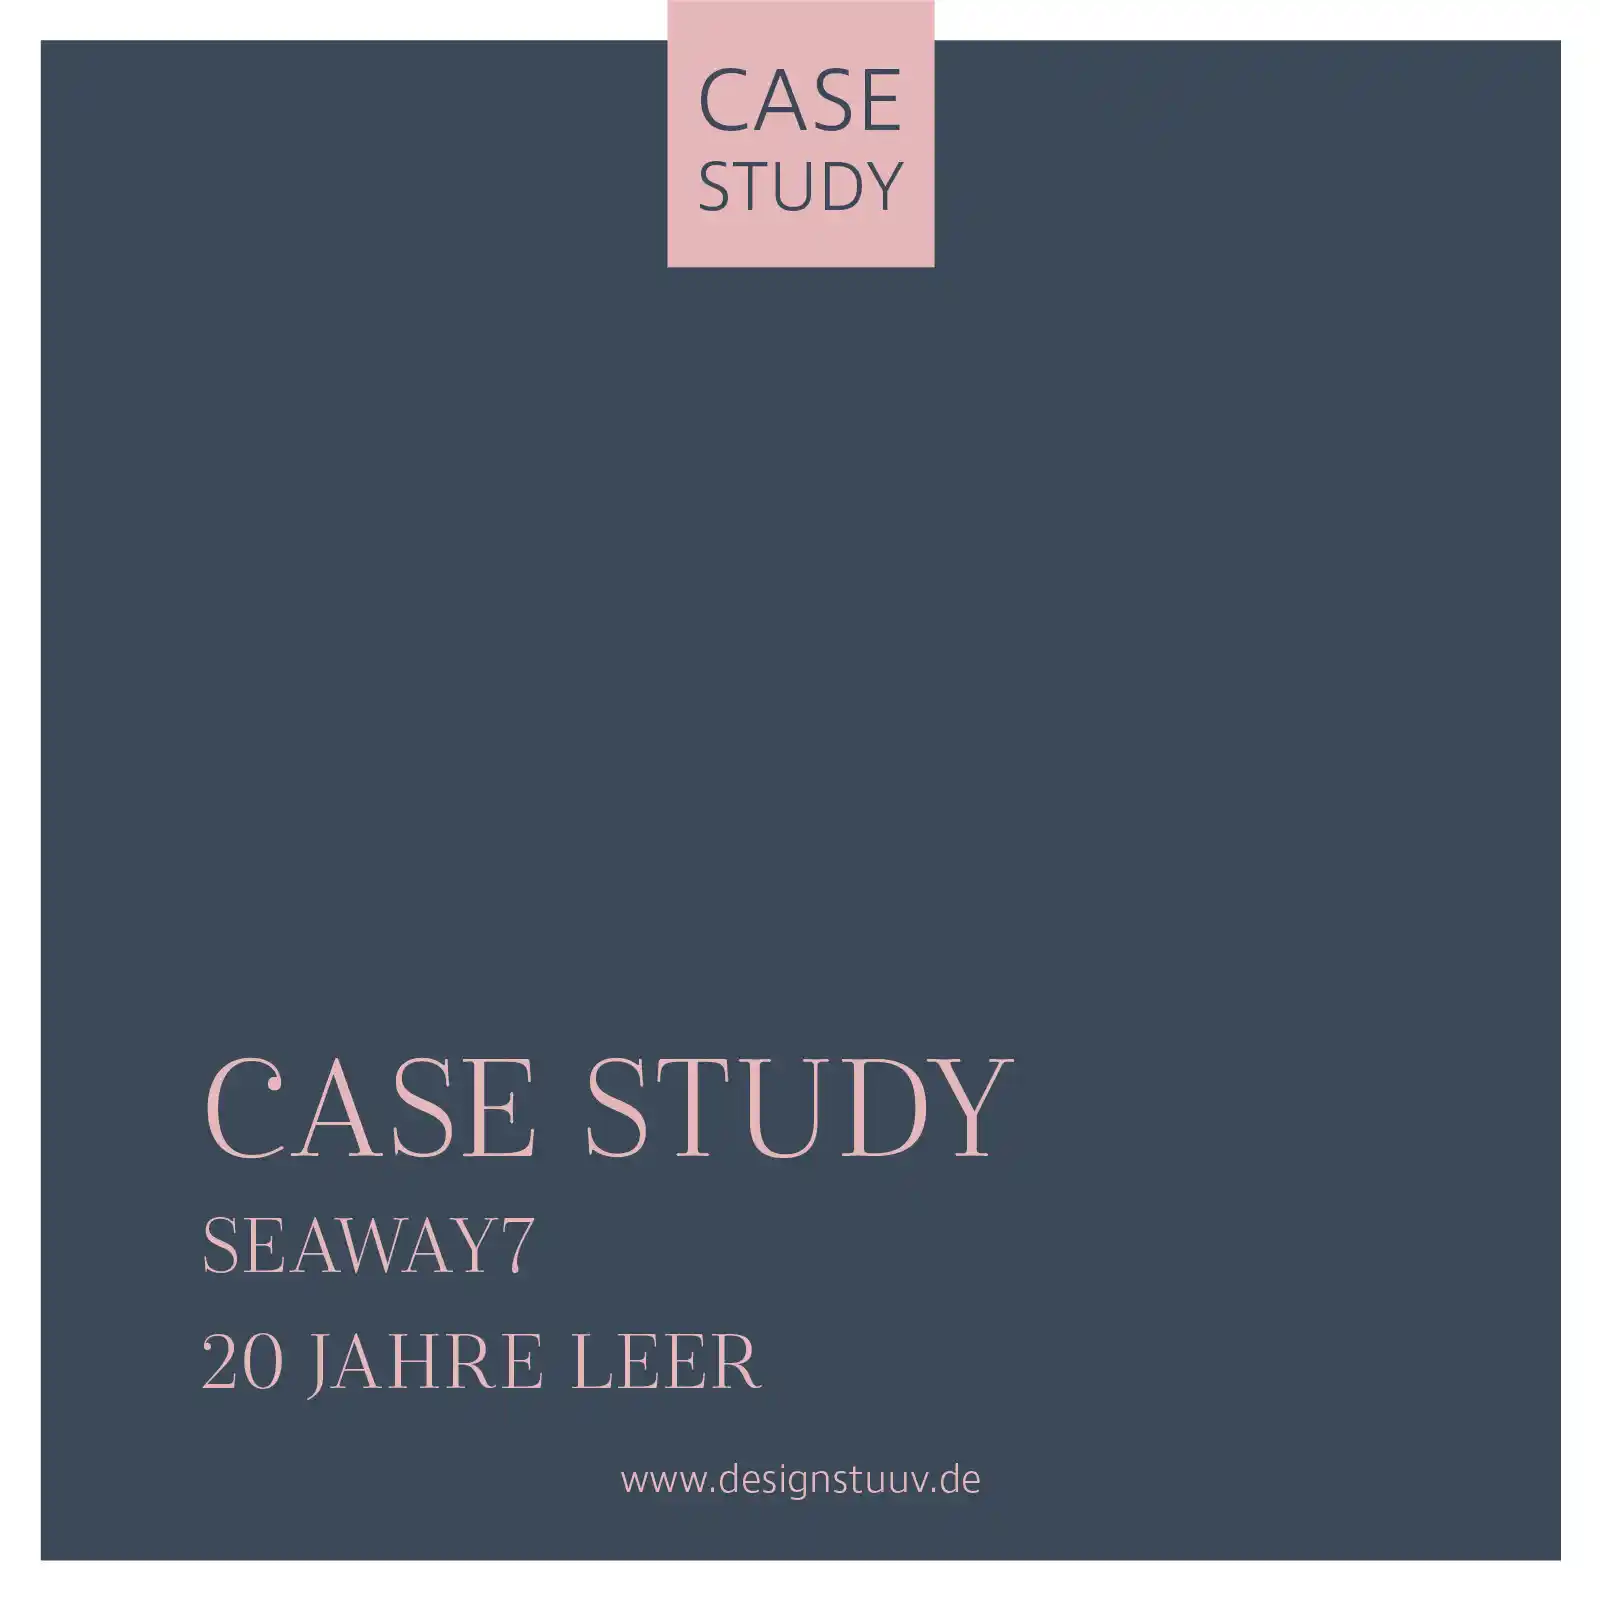 01 01 Seaway 7 Designstuuv 20 Jahre leer Kampagne case Study